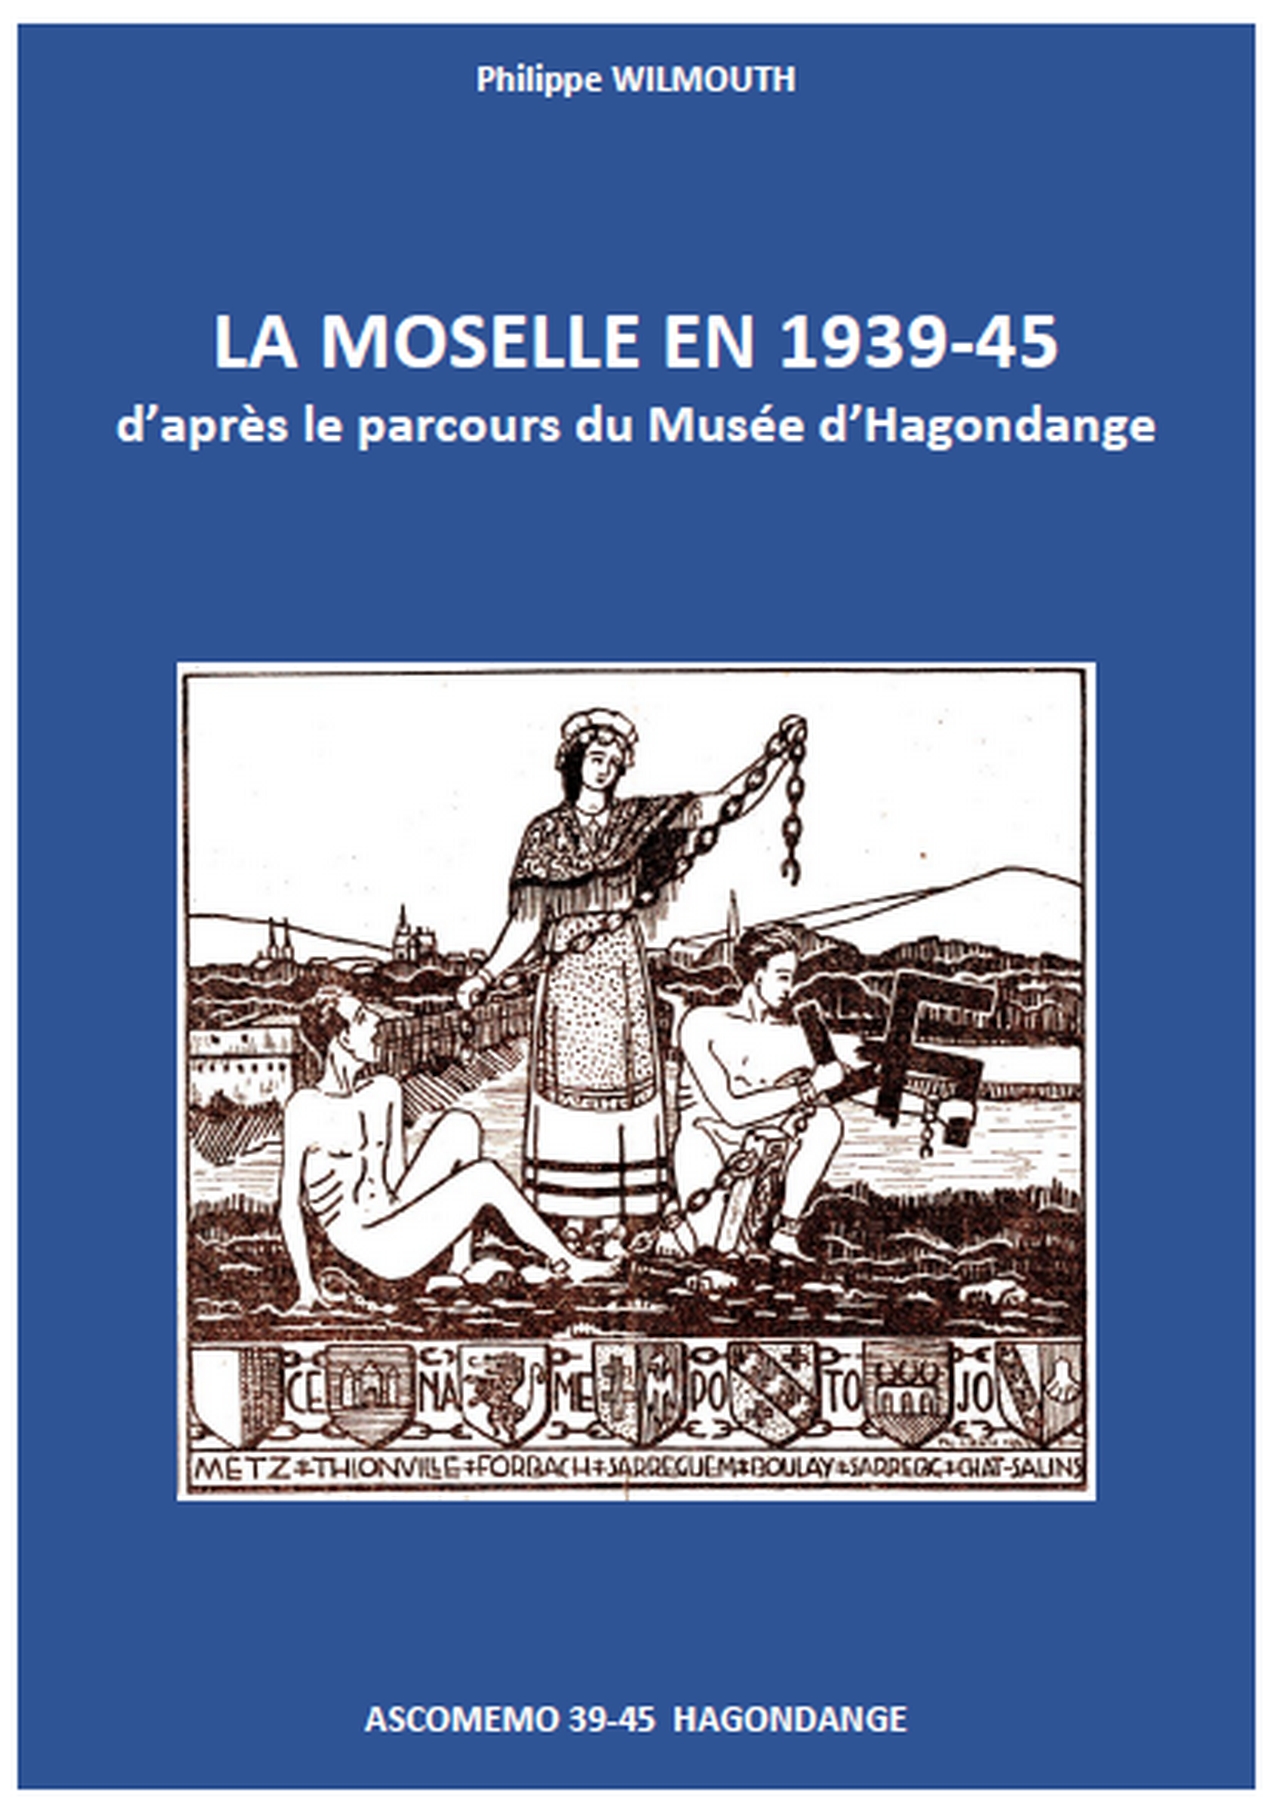 couverture livret Musée de la Moselle en 1939-1945